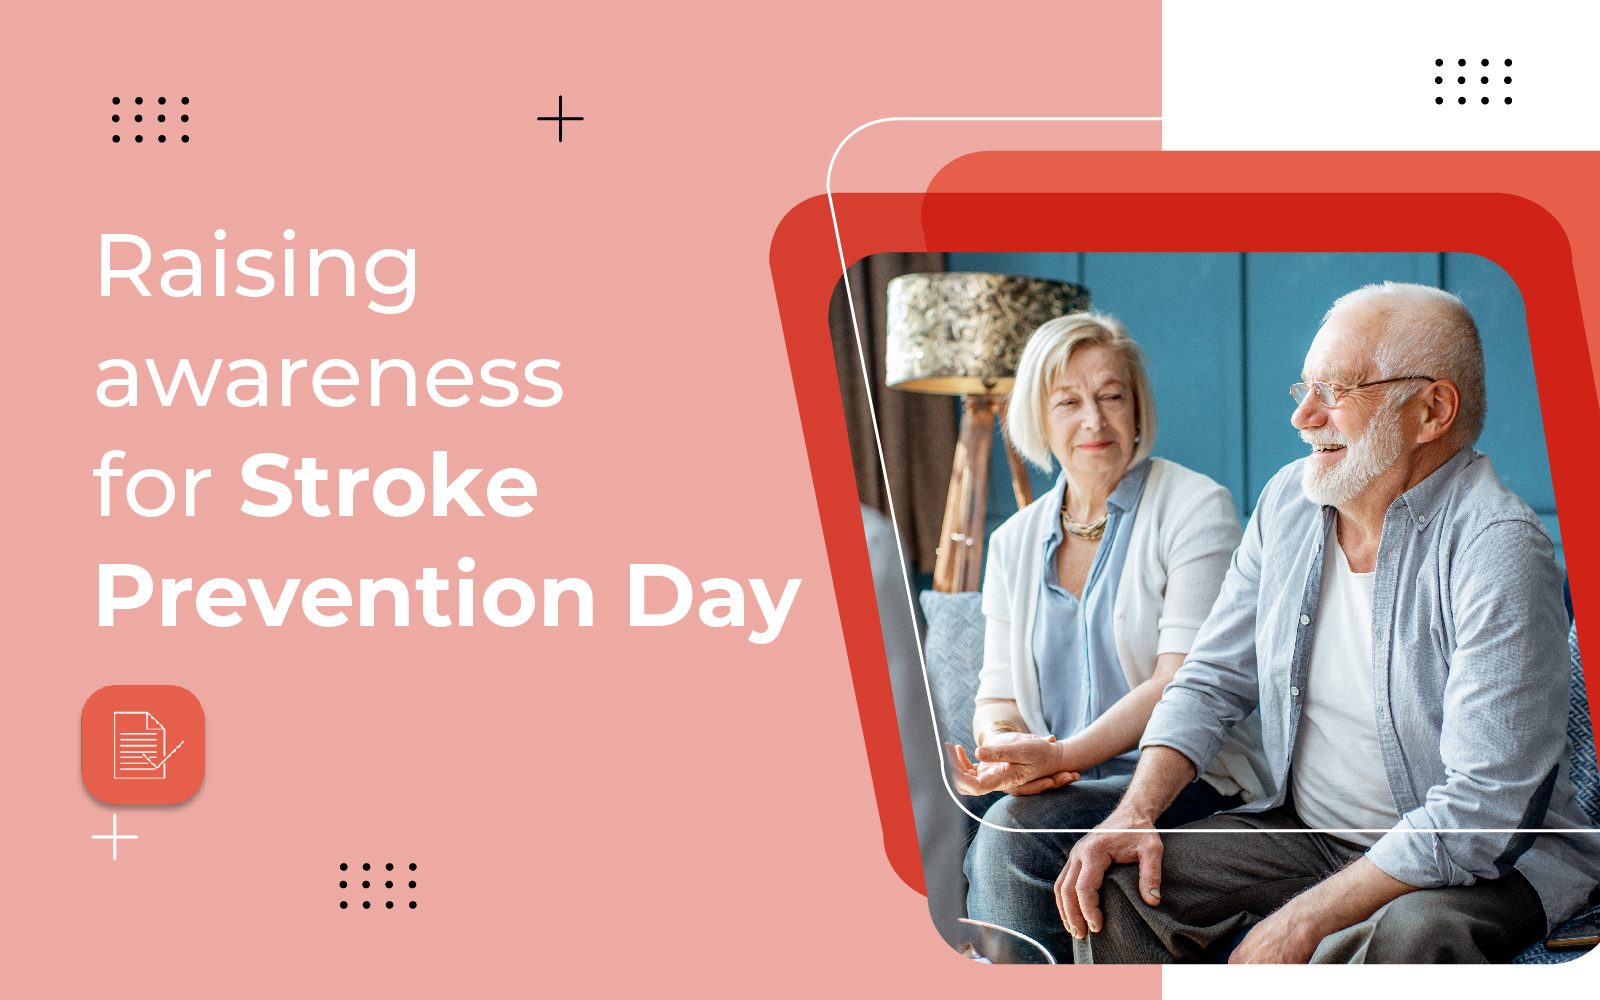 Raising awareness for Stroke Prevention Day